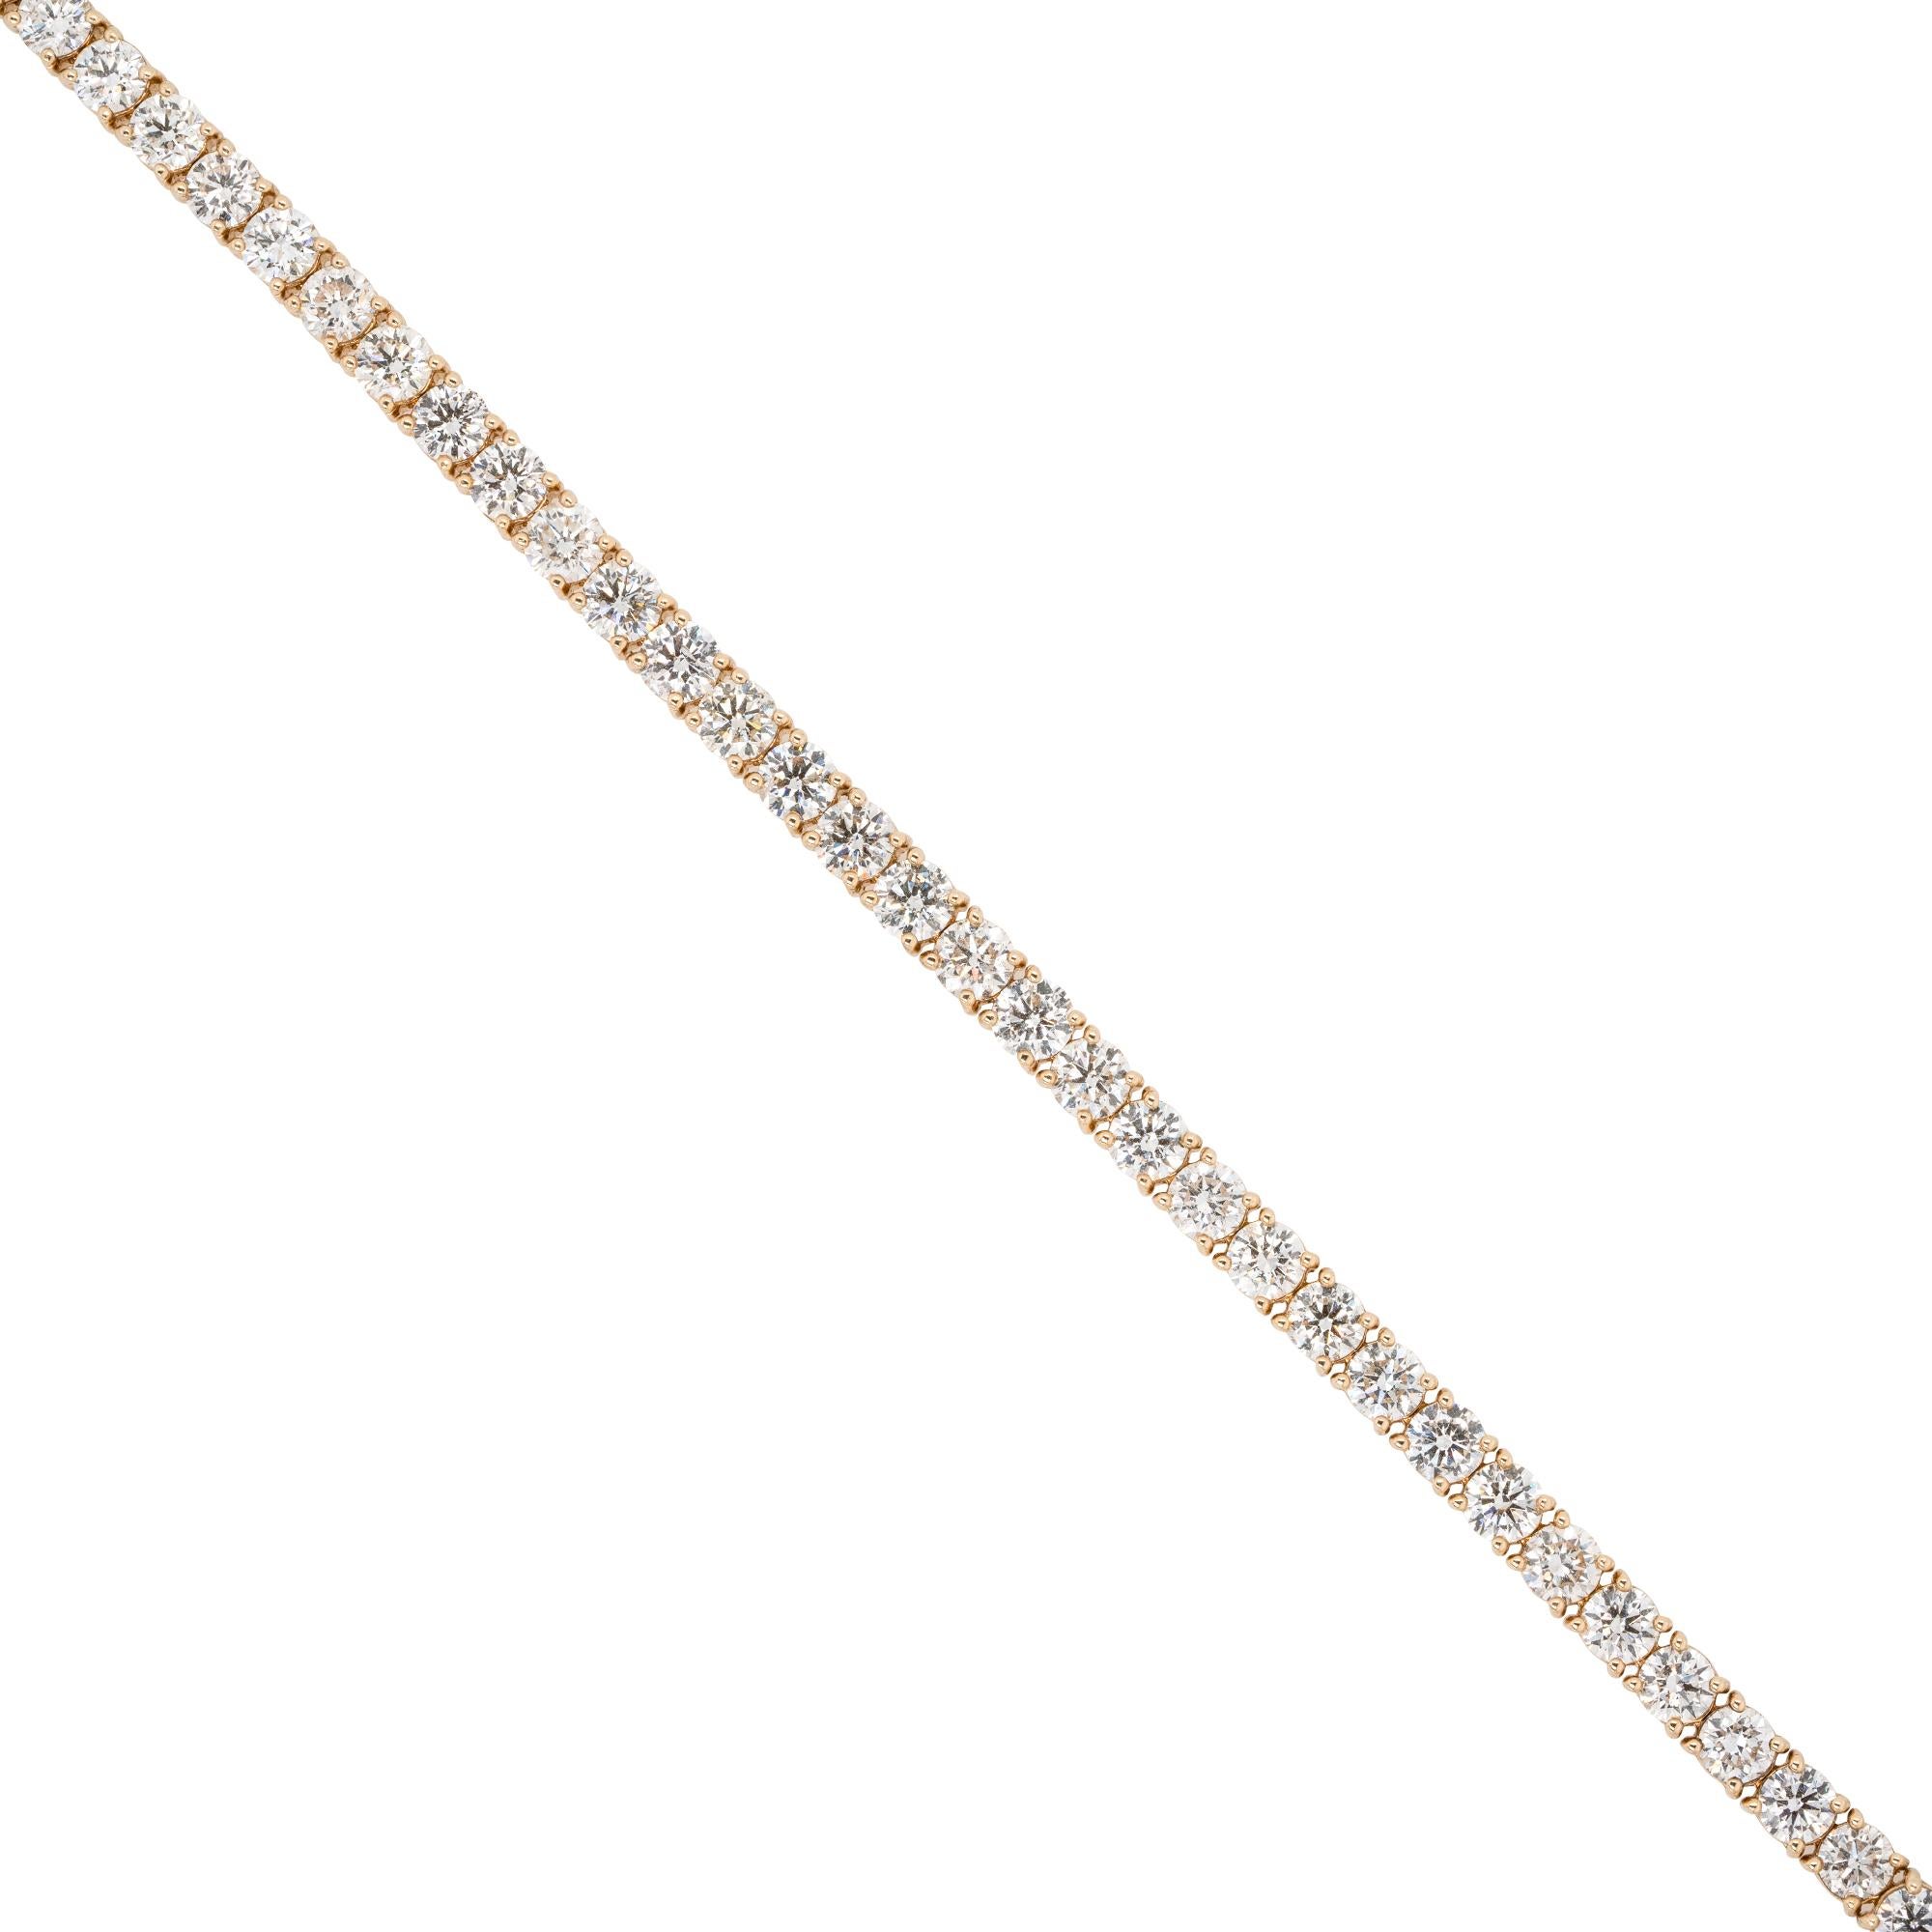 MATERIAL: 14k Gelbgold
Diamant-Details: Ca. 13,03ctw von rund geschliffenen Diamanten. Die Diamanten haben eine Farbe von G/H und eine Reinheit von VS.
Abmessungen des Armbands: 7 Zoll in der Länge und 4,5 mm breit
Gesamtgewicht: 14,3g